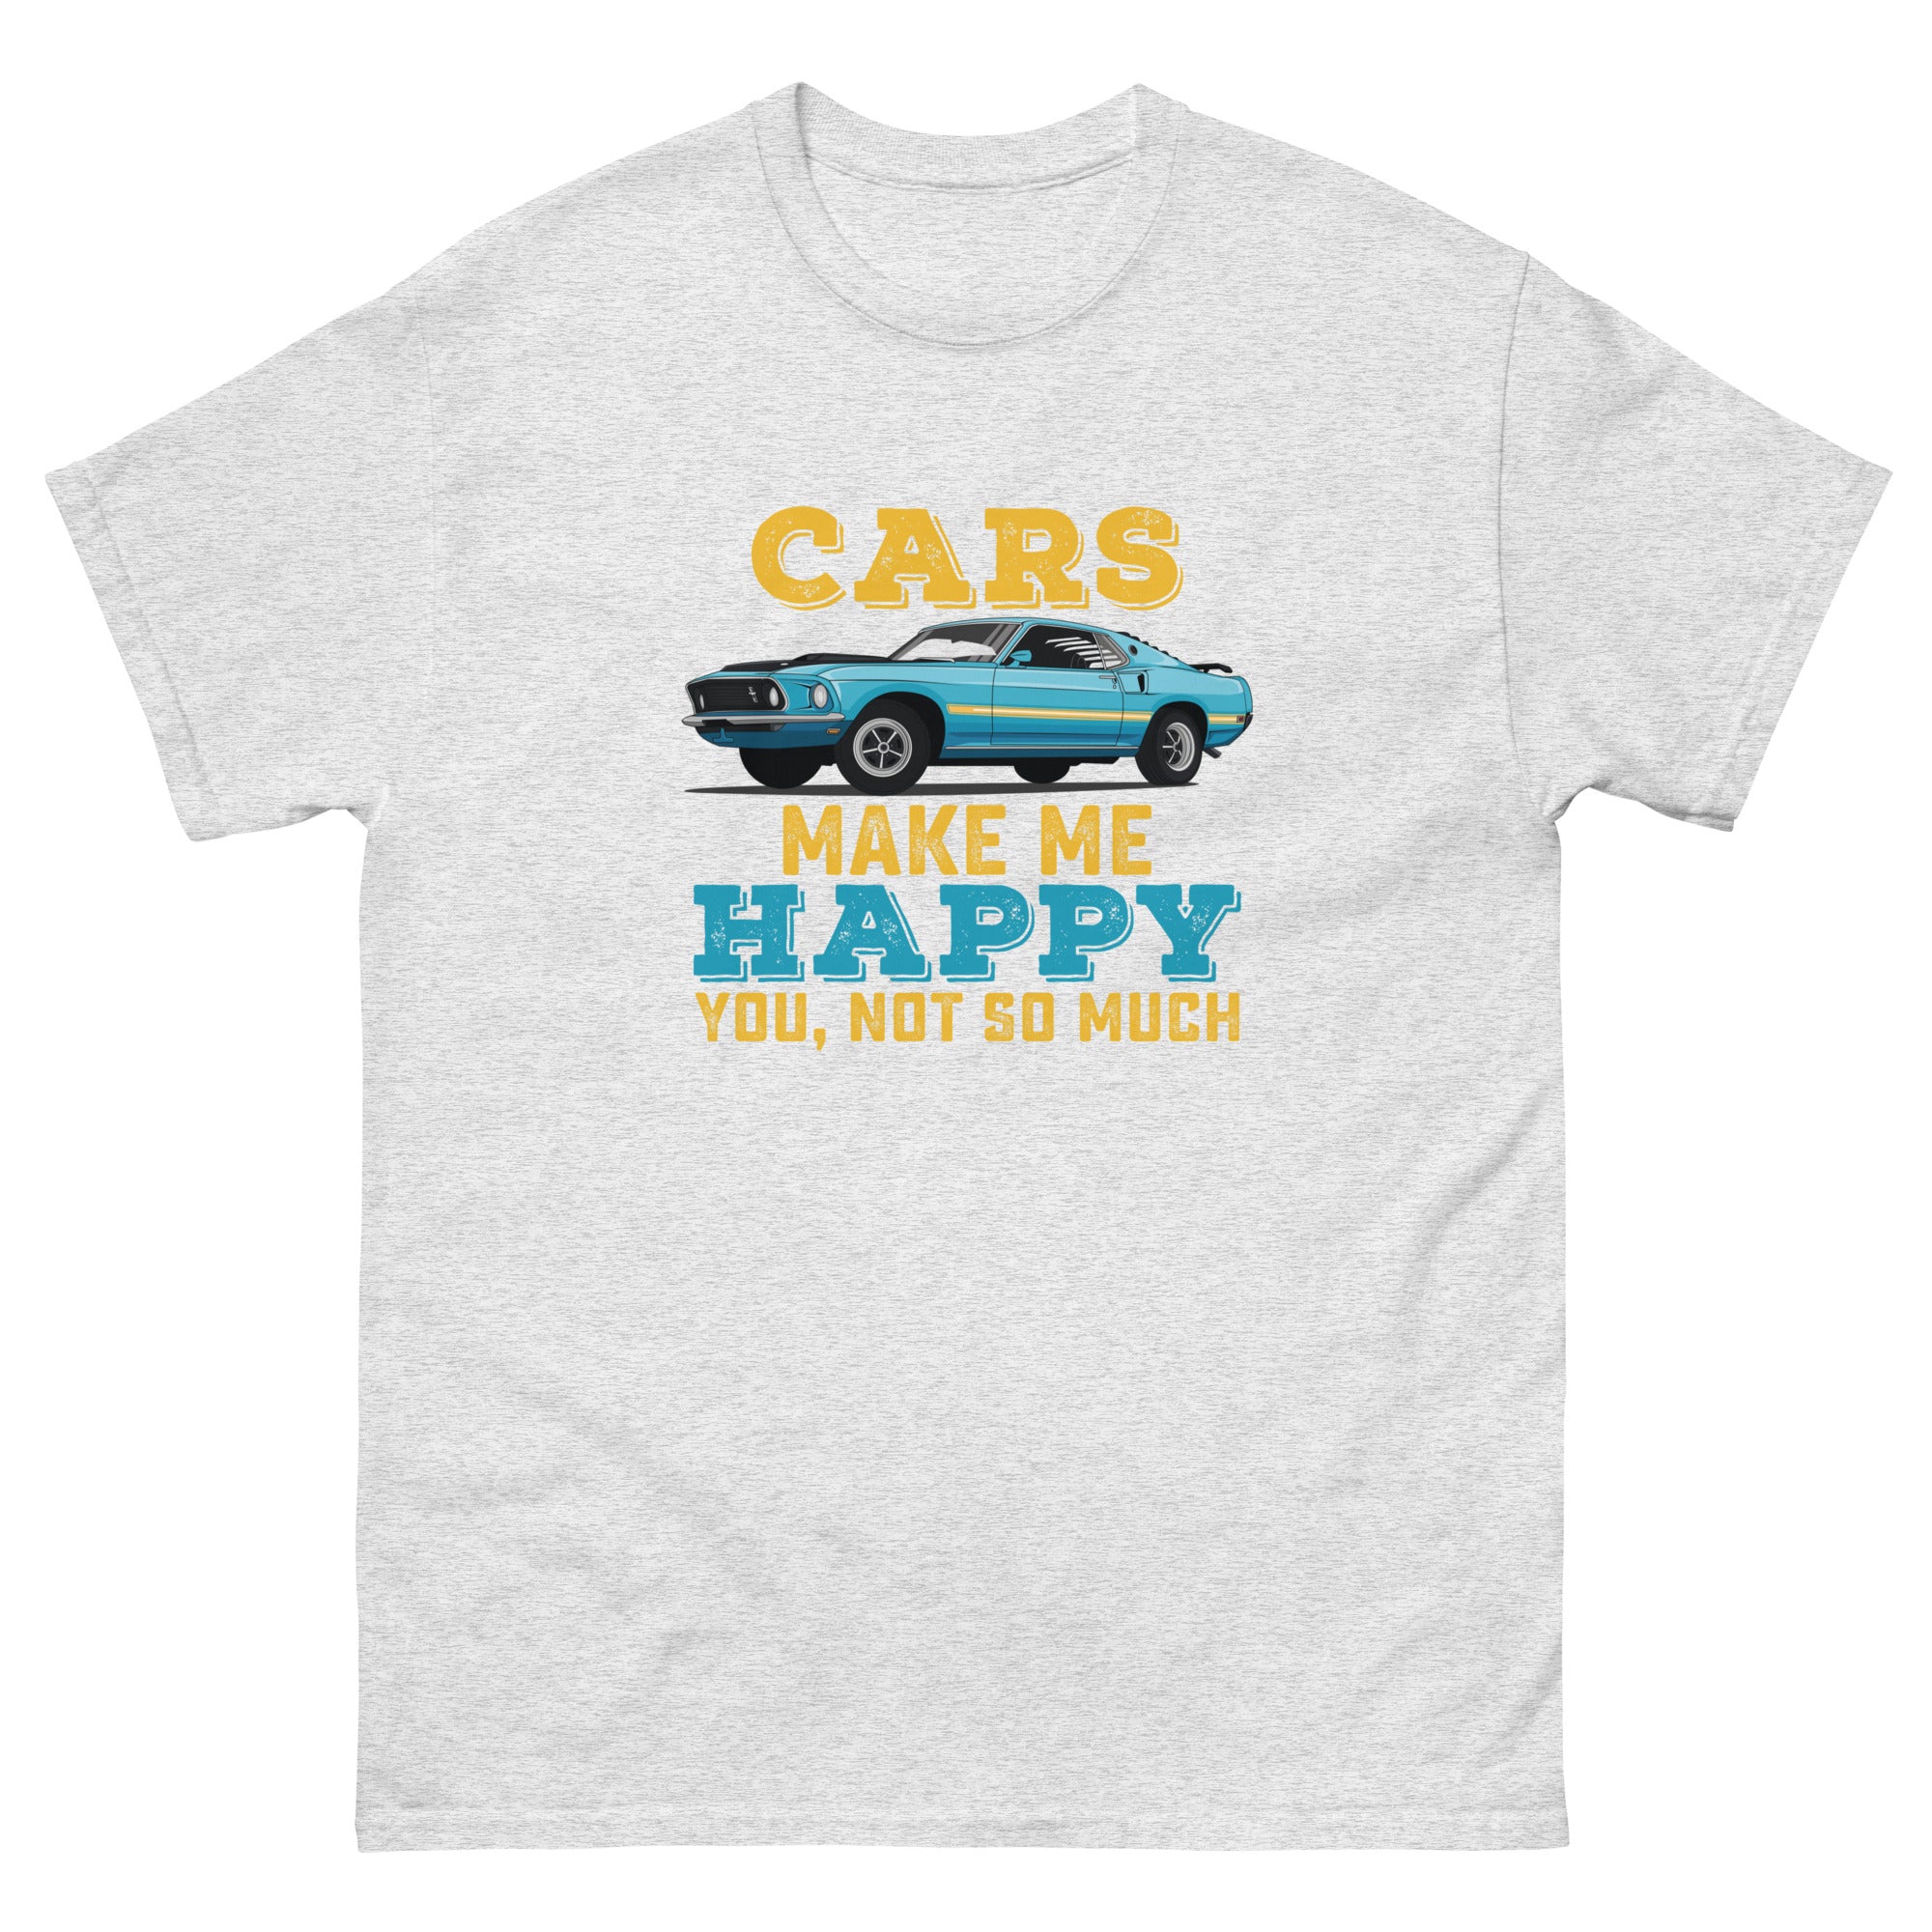 Cars Make Me Happy classic tee